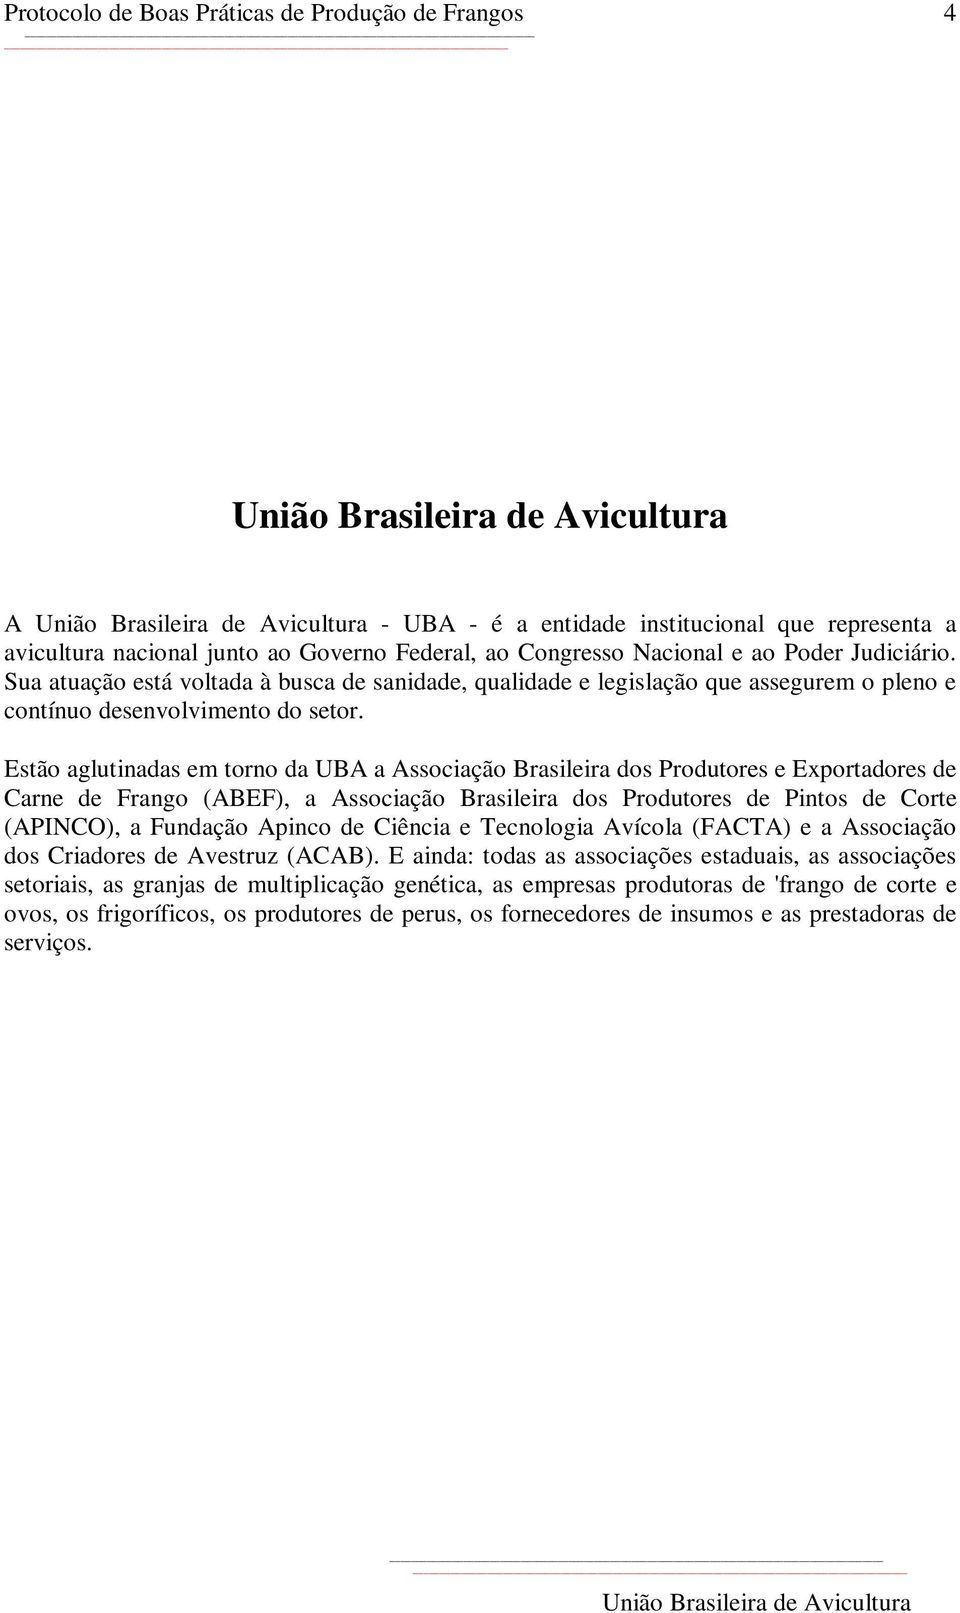 Estão aglutinadas em torno da UBA a Associação Brasileira dos Produtores e Exportadores de Carne de Frango (ABEF), a Associação Brasileira dos Produtores de Pintos de Corte (APINCO), a Fundação